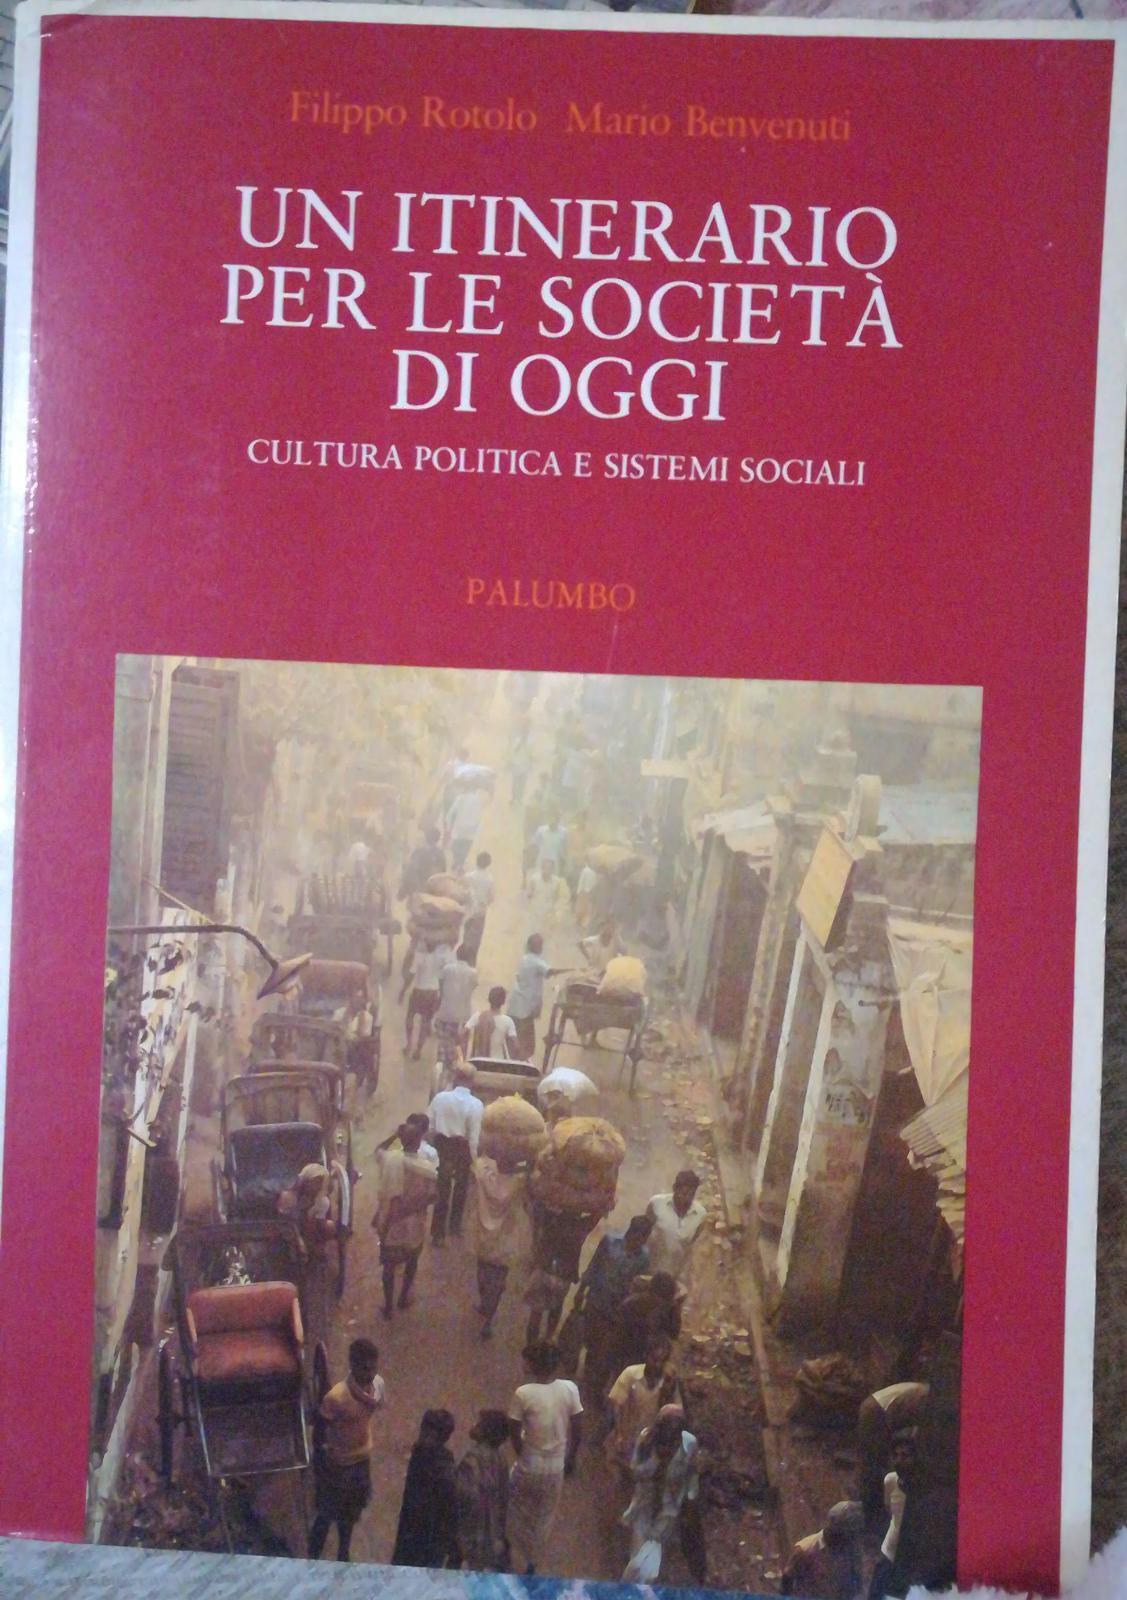  Un itinerario per le societ? di oggi - F. Rotolo- M. Benvenuti,1988,Palumbo - S